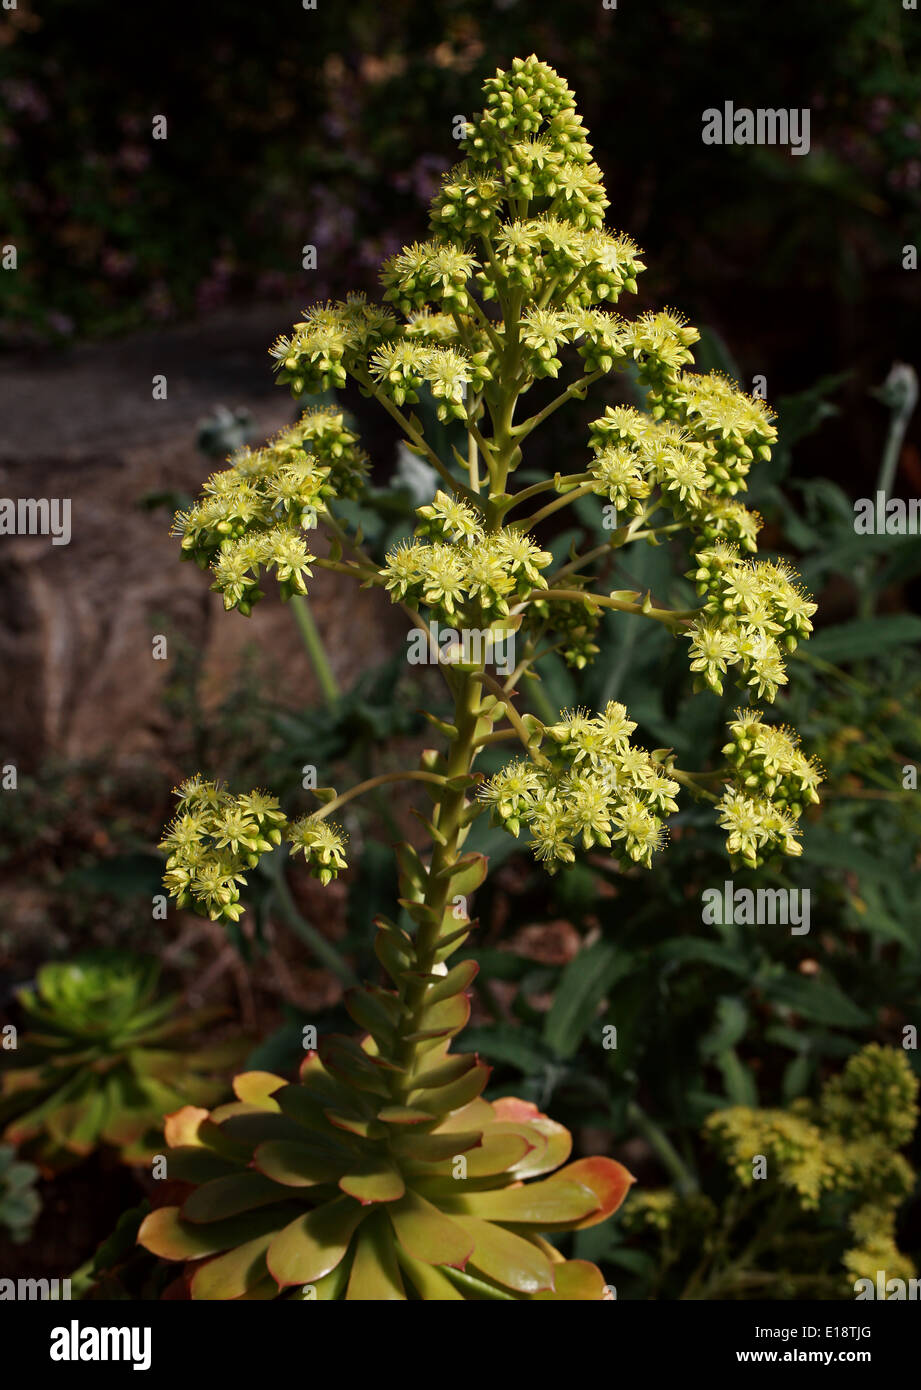 La Palma Aeonium, Aeonium palmense, Crassulaceae. Canary Islands, Spain. Stock Photo